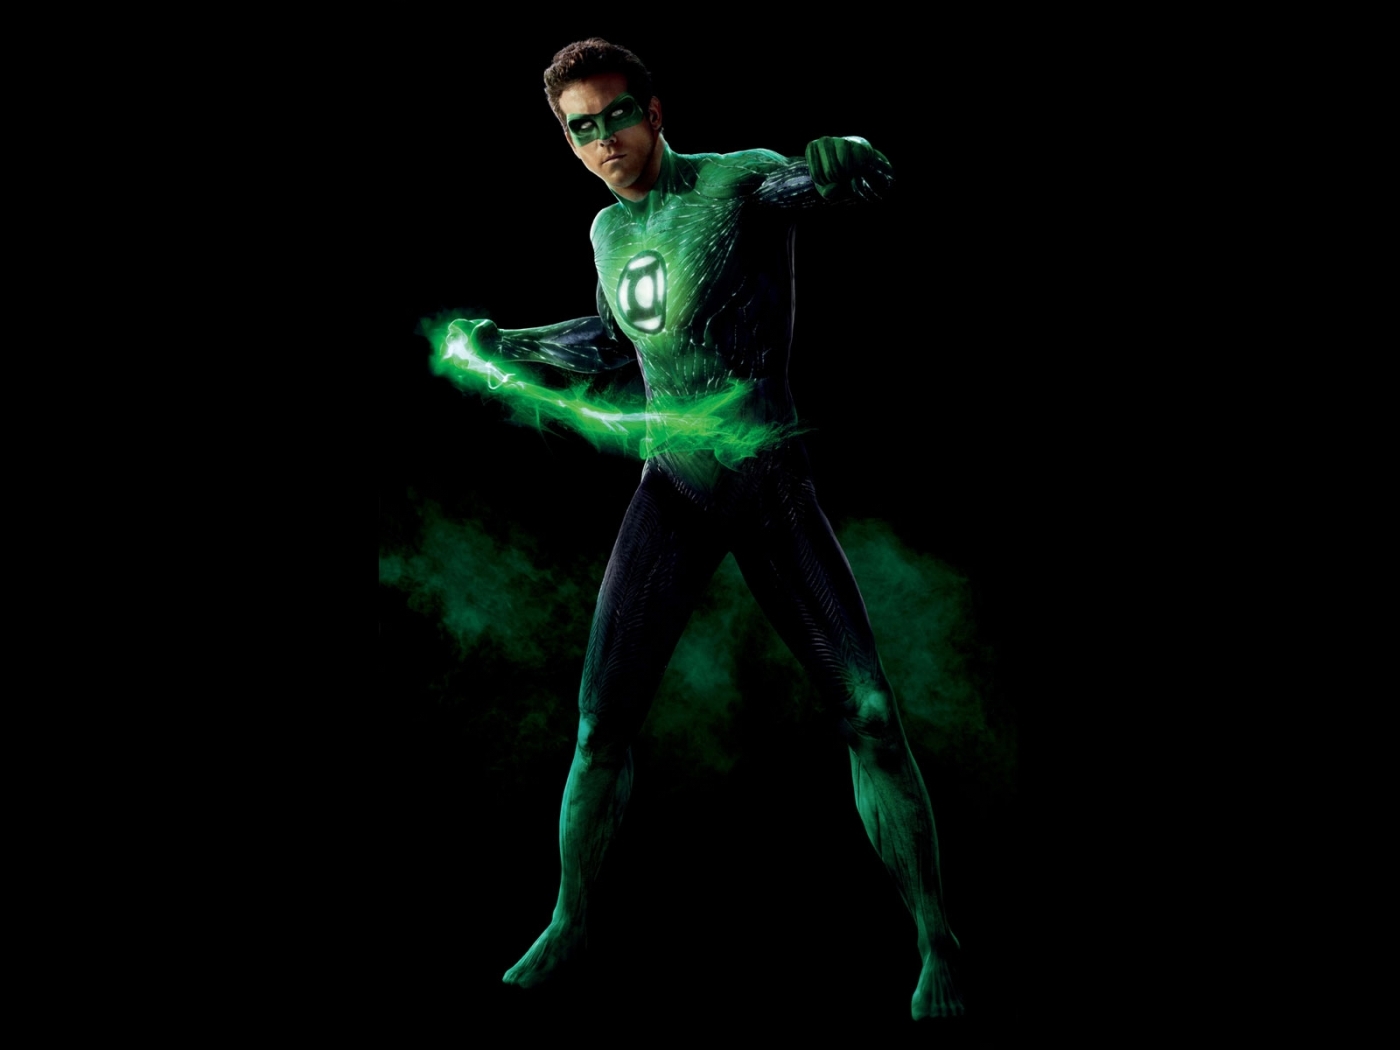 Популярные заставки и фоны Зеленый Фонарь (Green Lantern) на компьютер